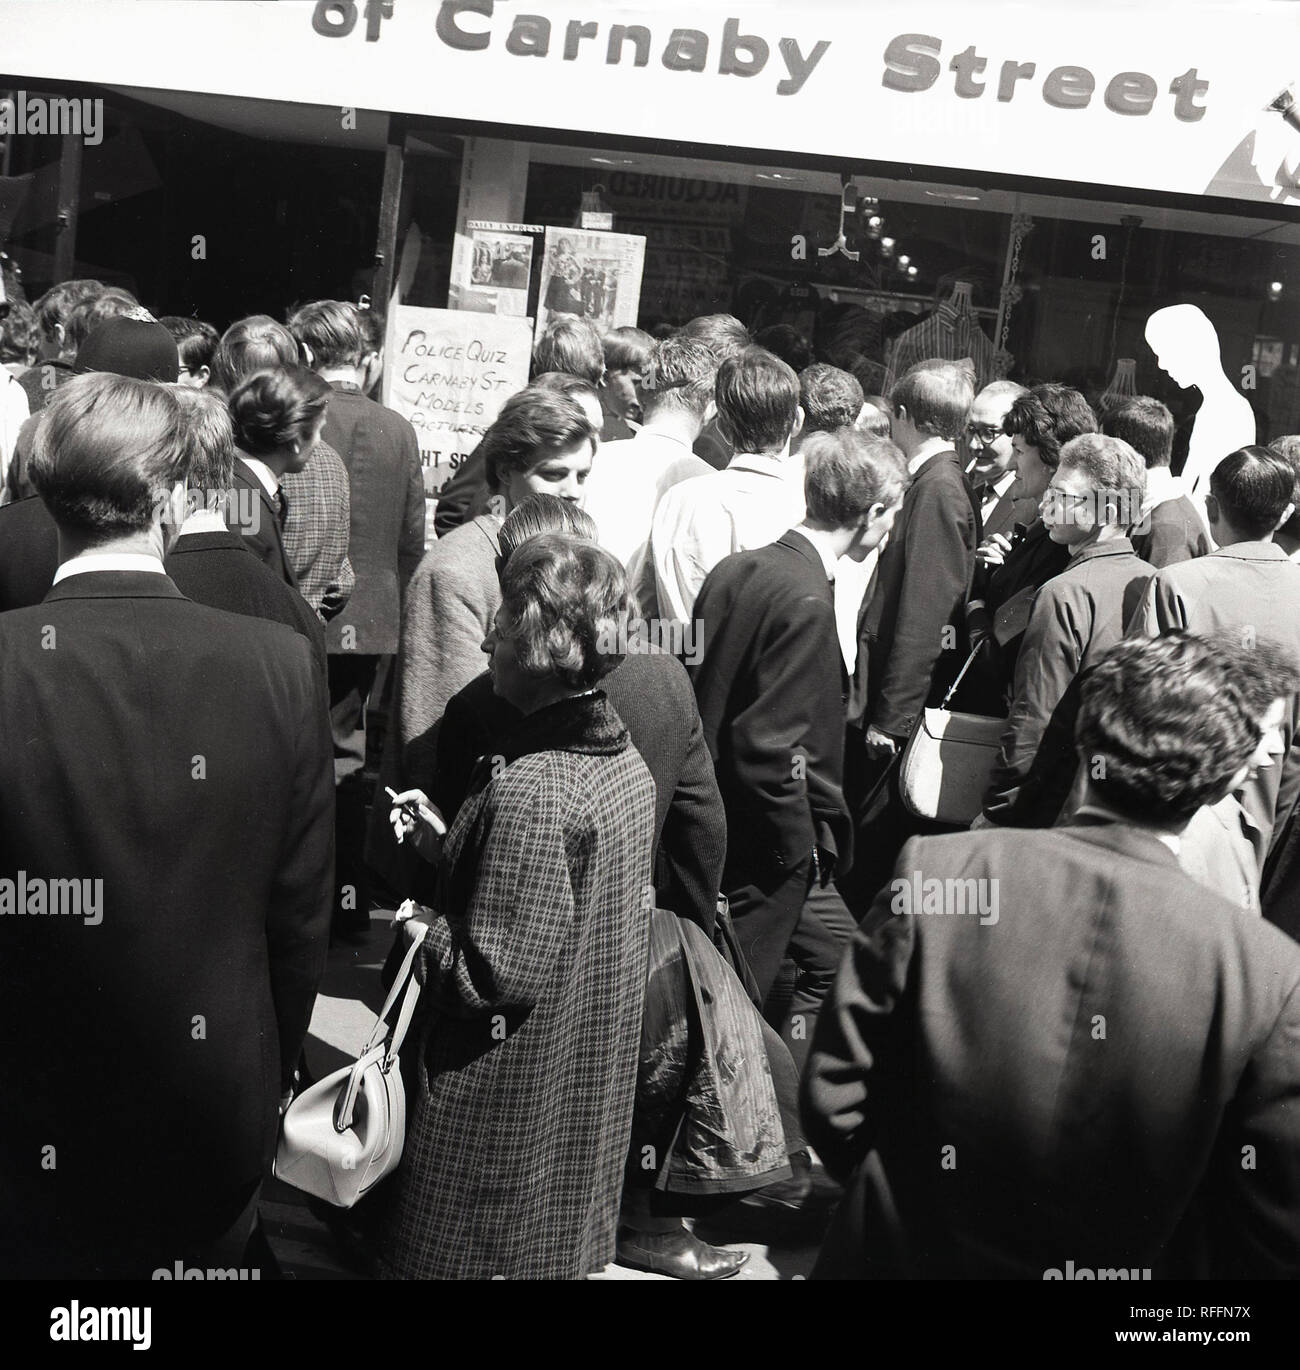 1967, historiques, des foules de gens se mêlent à l'extérieur d'un magasin à Carnaby Street, Londres, Angleterre, Royaume-Uni. En cette ère, Carnaby Street a été le centre de la scène de la mode britannique avec de nombreux magasins de vêtements et des modèles de mode faisant l'apparence. Banque D'Images